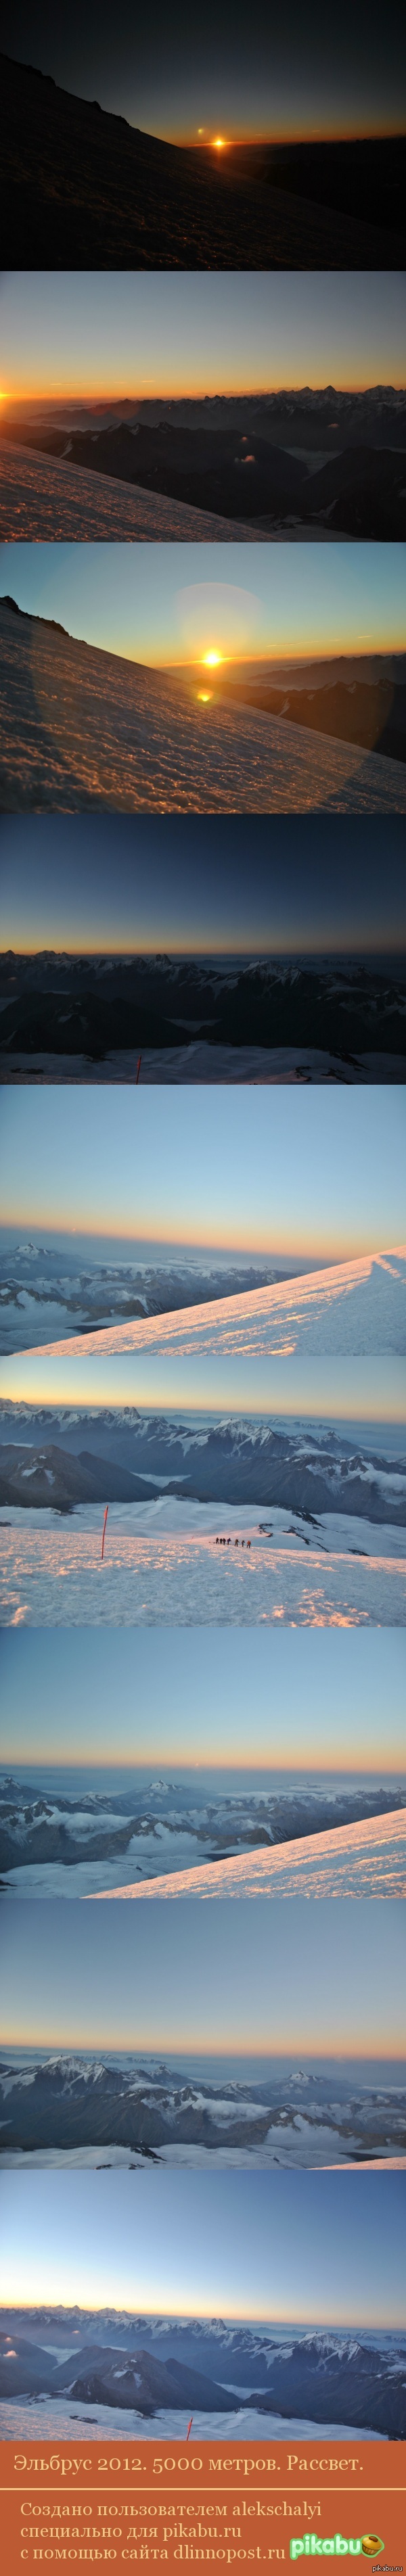 Elbrus 2012. 5000 meters - My, The photo, Elbrus, Sunrises and sunsets, Longpost